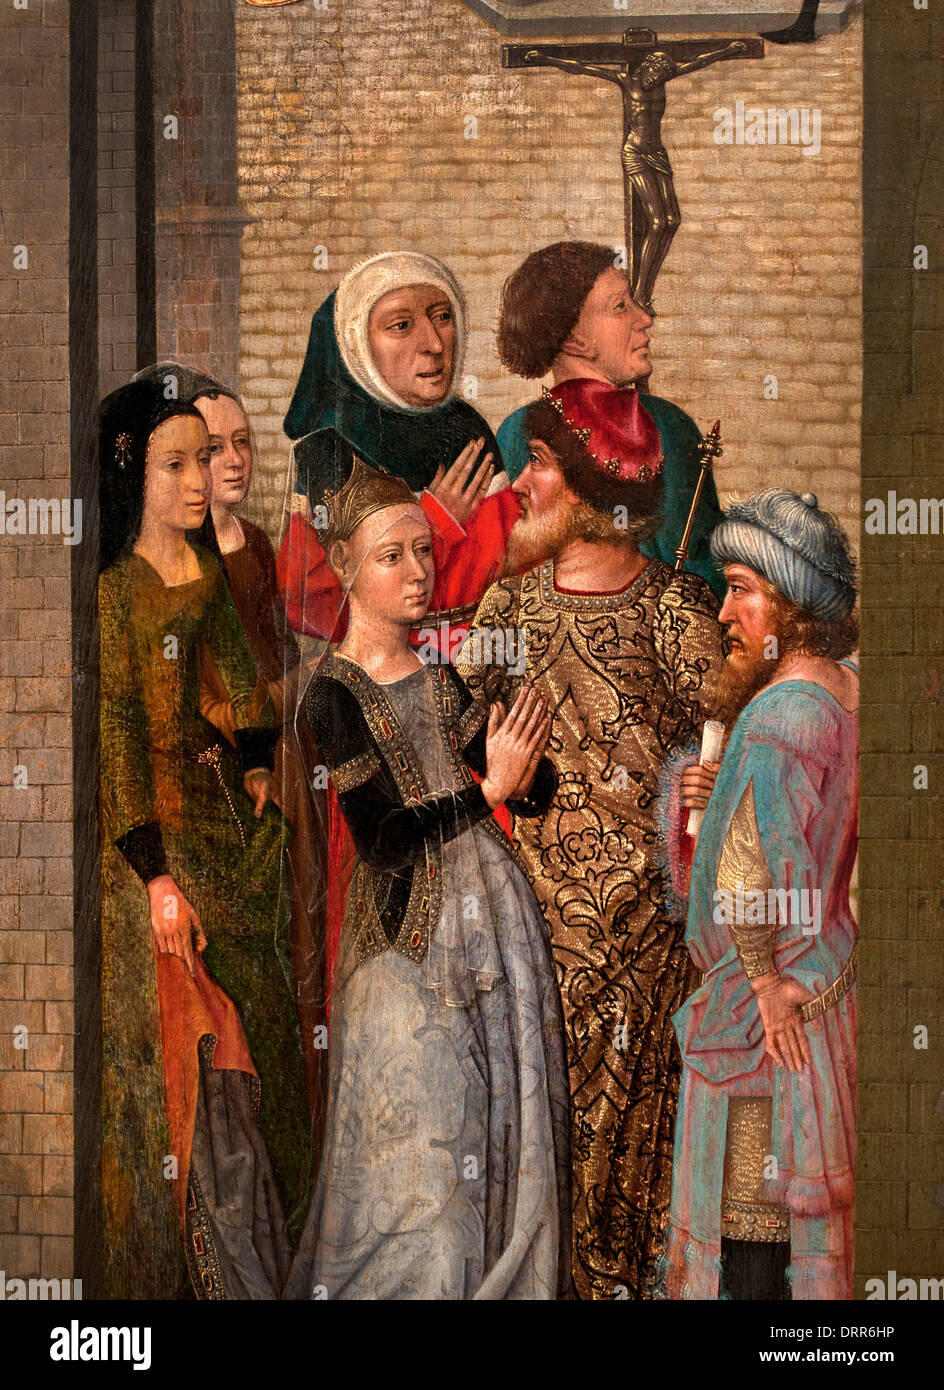 Maestro di Santa Caterina leggenda 1475 = 1500 scene Medioevo belga fiamminga del Belgio Foto Stock